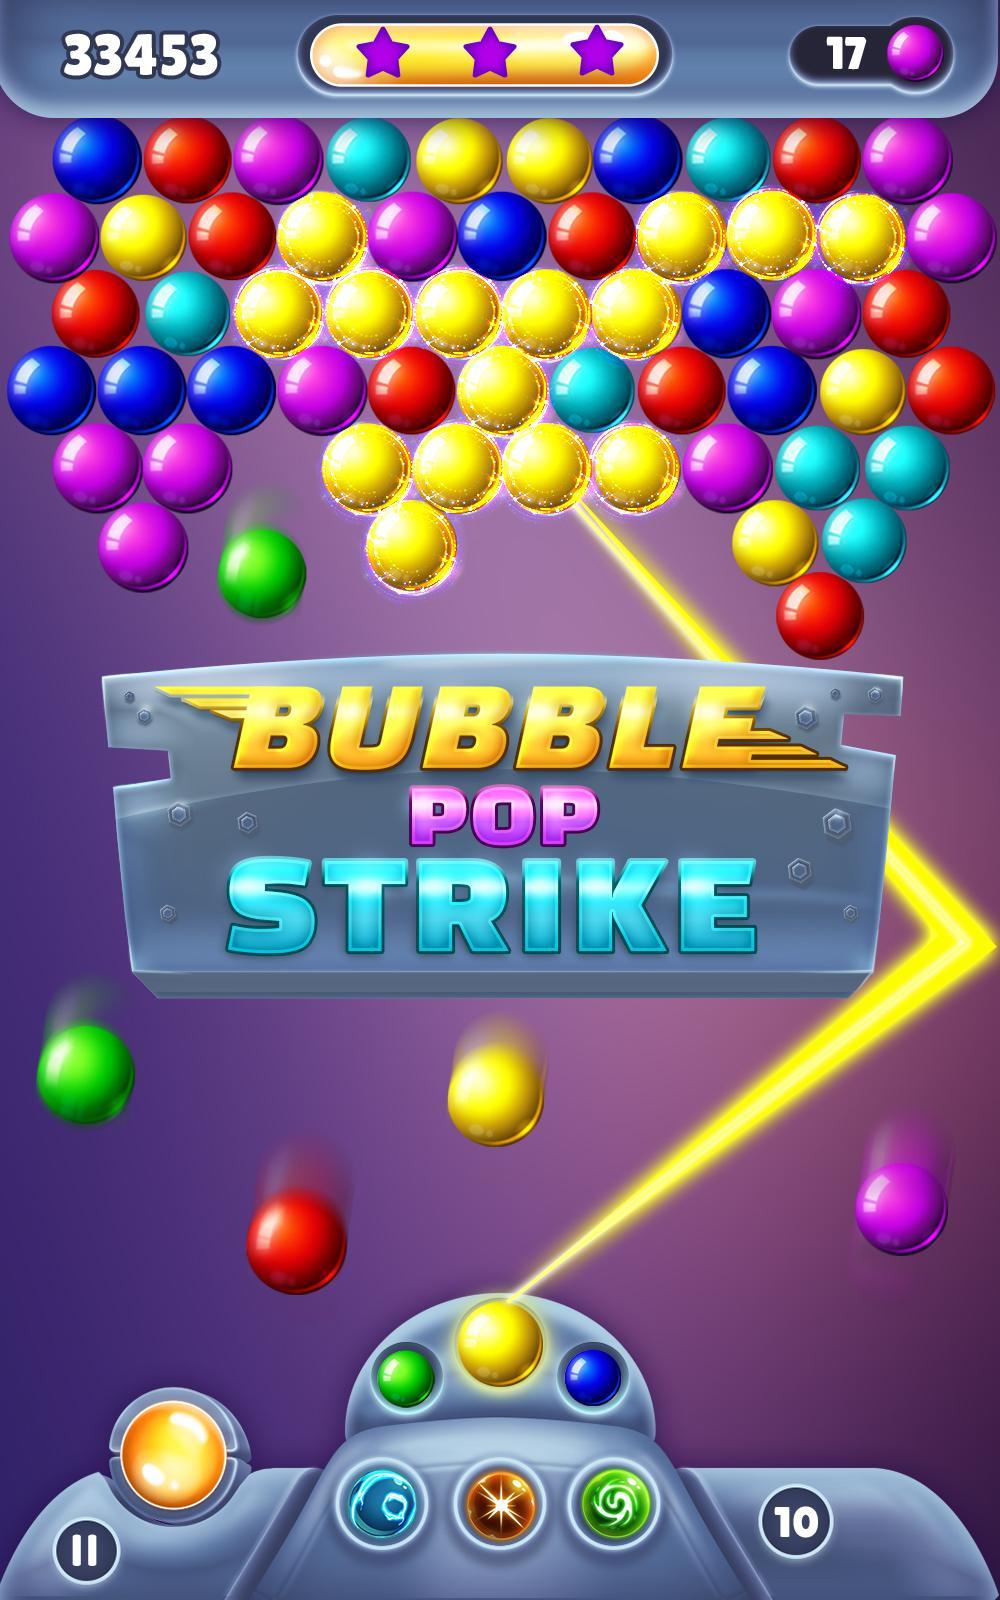 Bubble Pop Strikeのキャプチャ